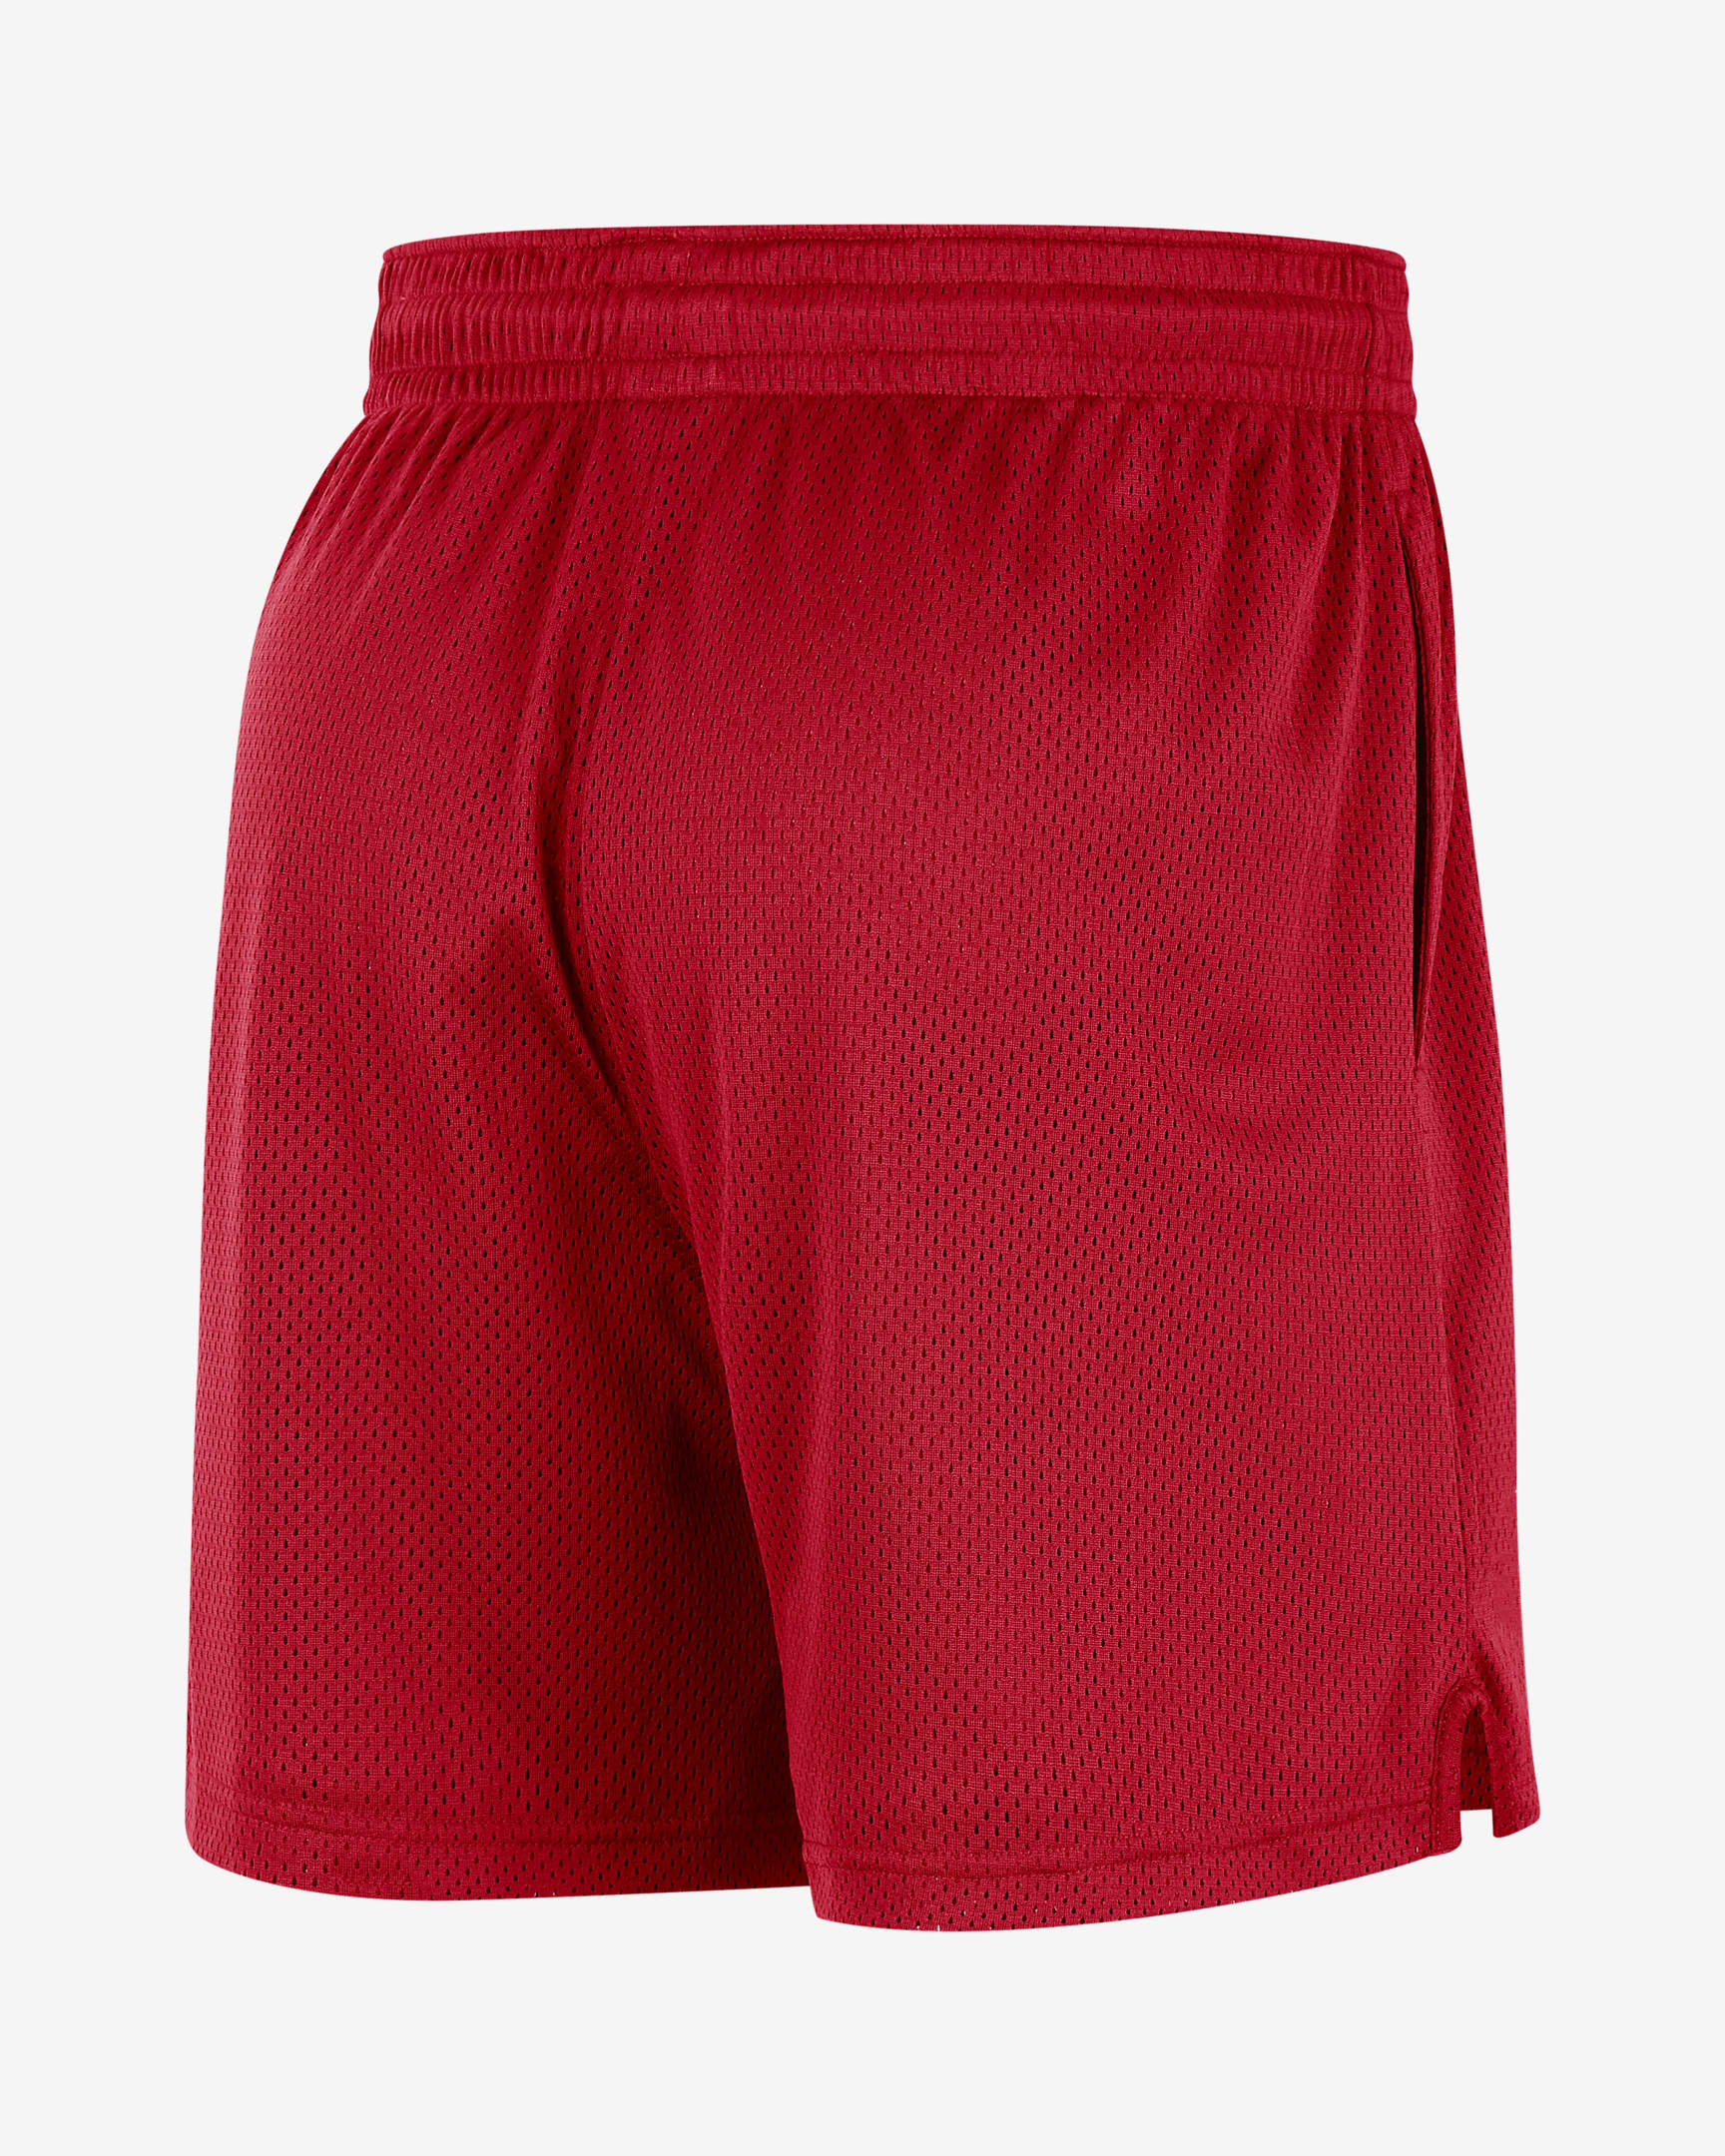 Shorts de malla Nike NBA para hombre Washington Wizards. Nike.com